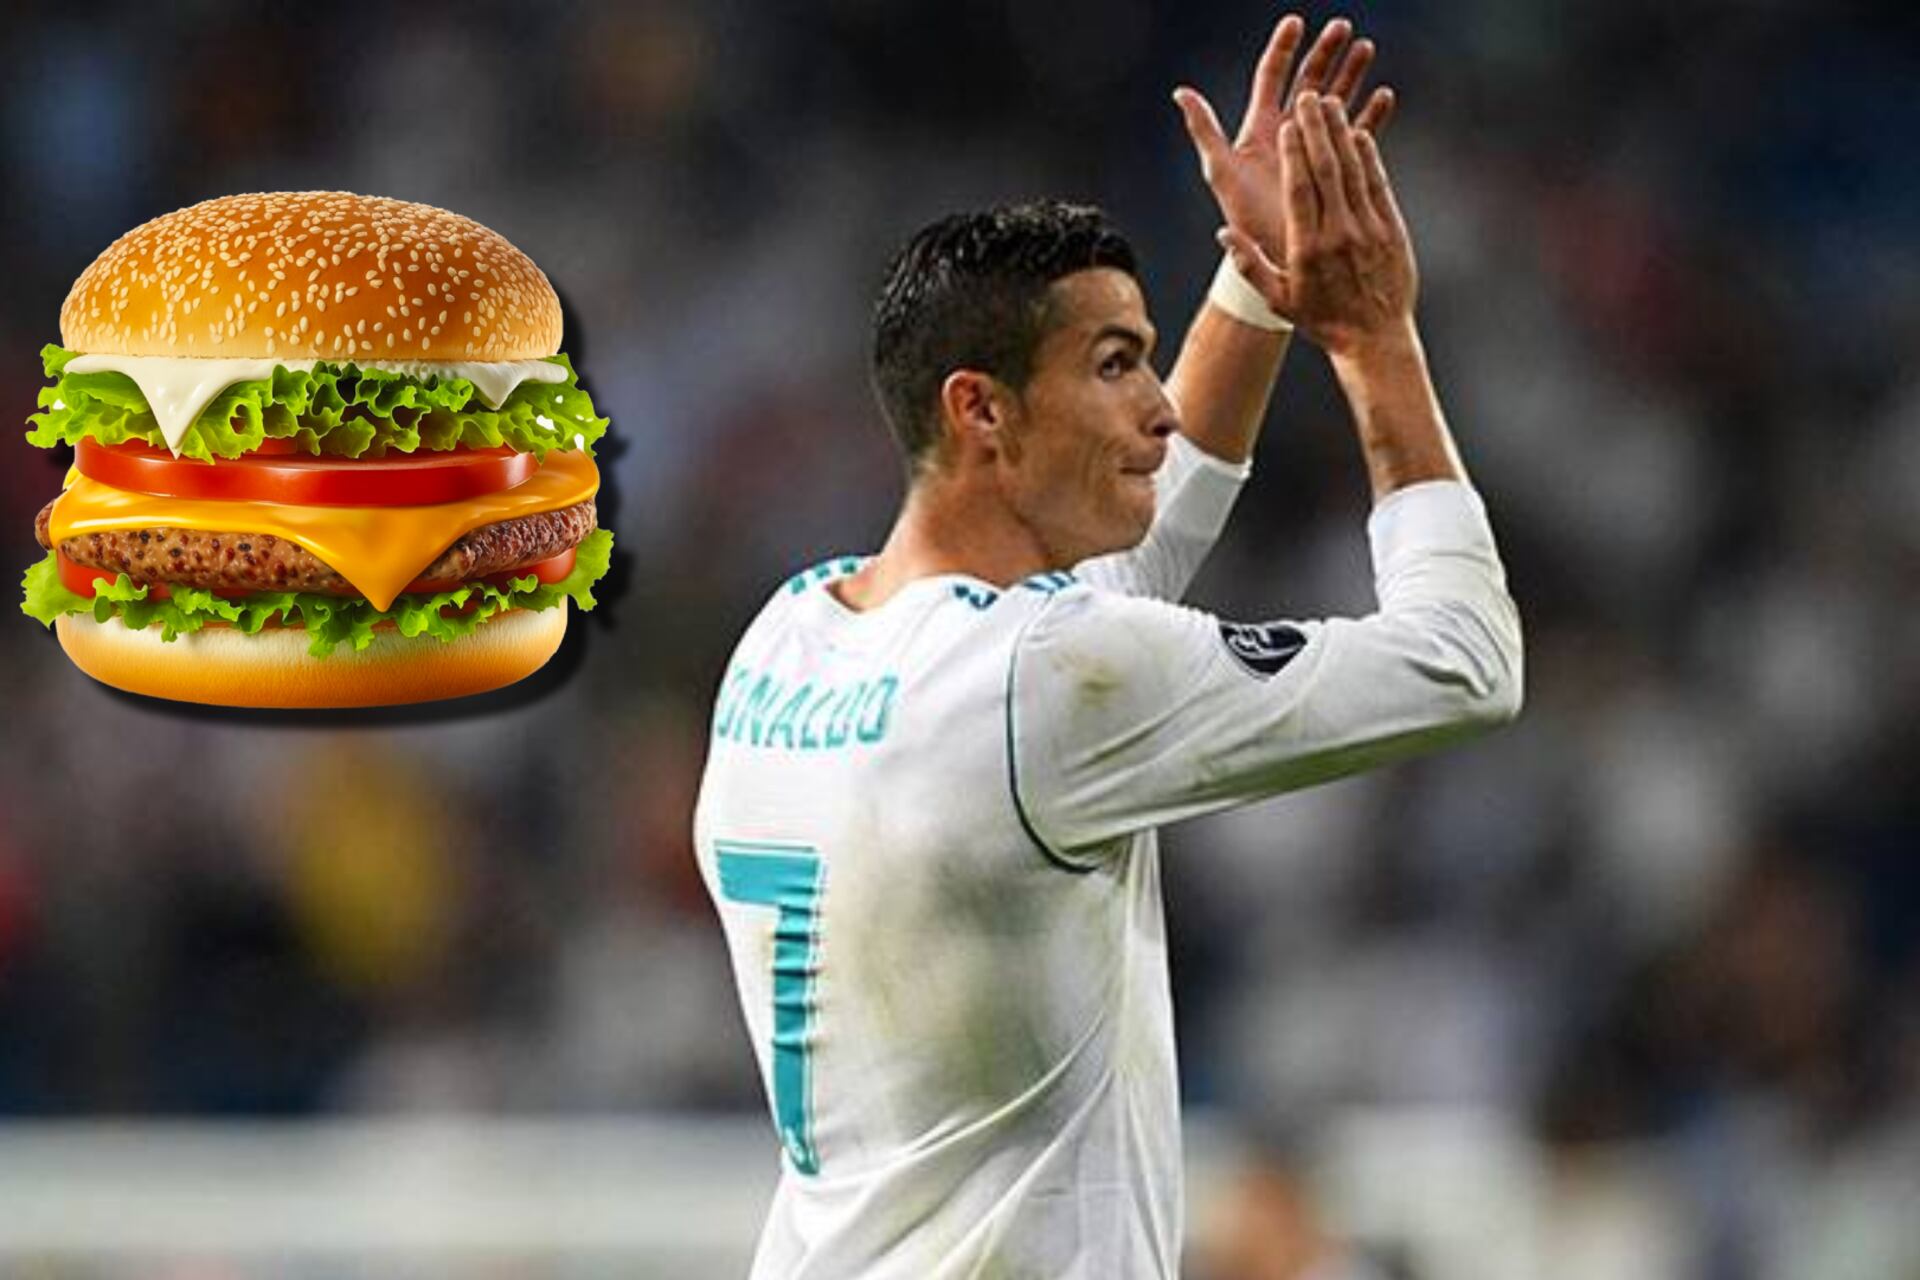 Se ganó el respeto de CR7, hizo 165 goles en el Madrid, hoy vende hamburguesas